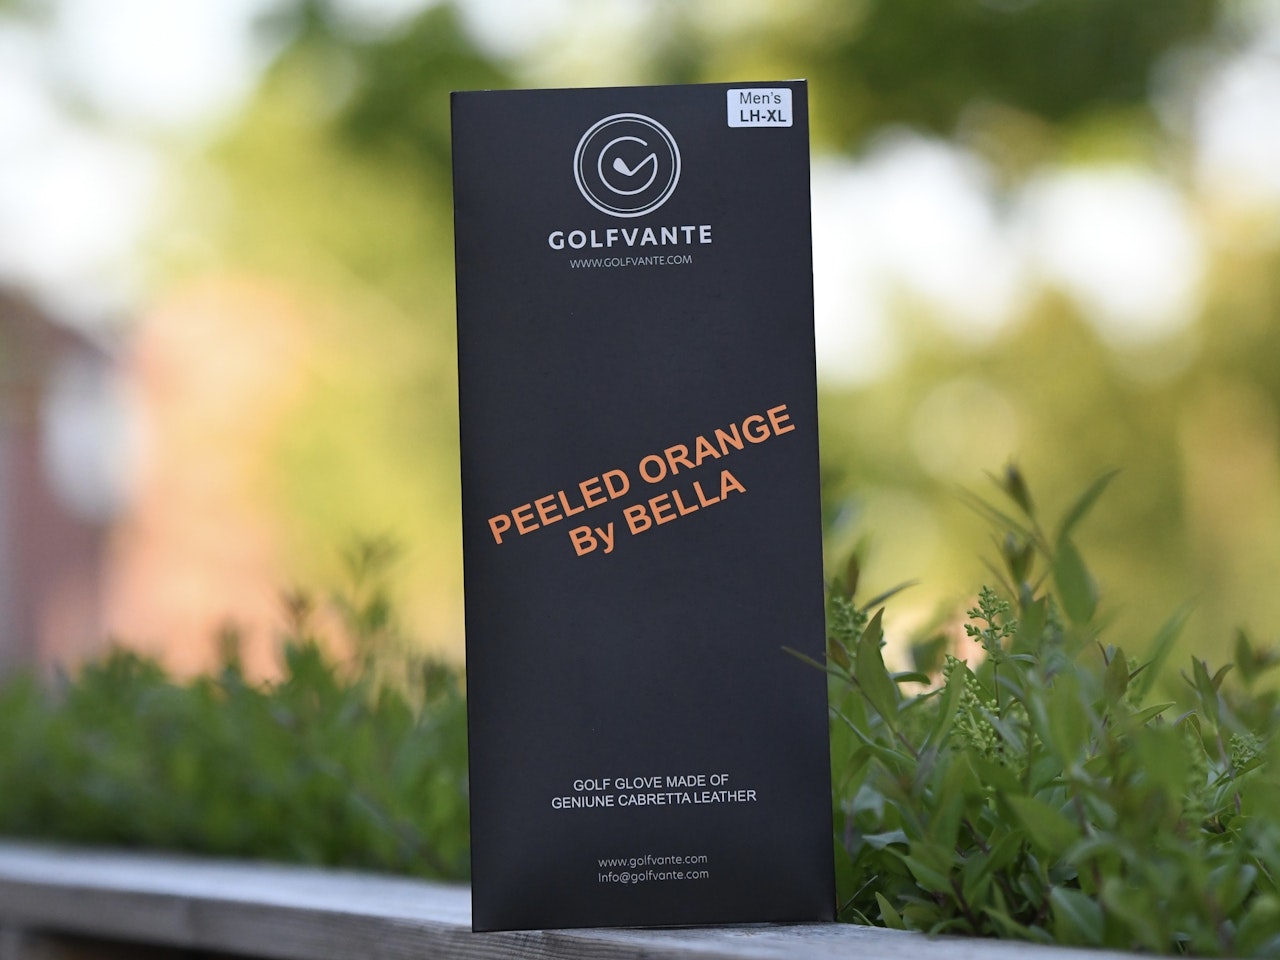 Upptäck den exklusiva golfhandsken Peeled Orange By Bella, skapad i samarbete med en av våra kunder. Med vårt innovativa "by You"-koncept får du möjligheten att skapa din egen unika golfhandske som ma